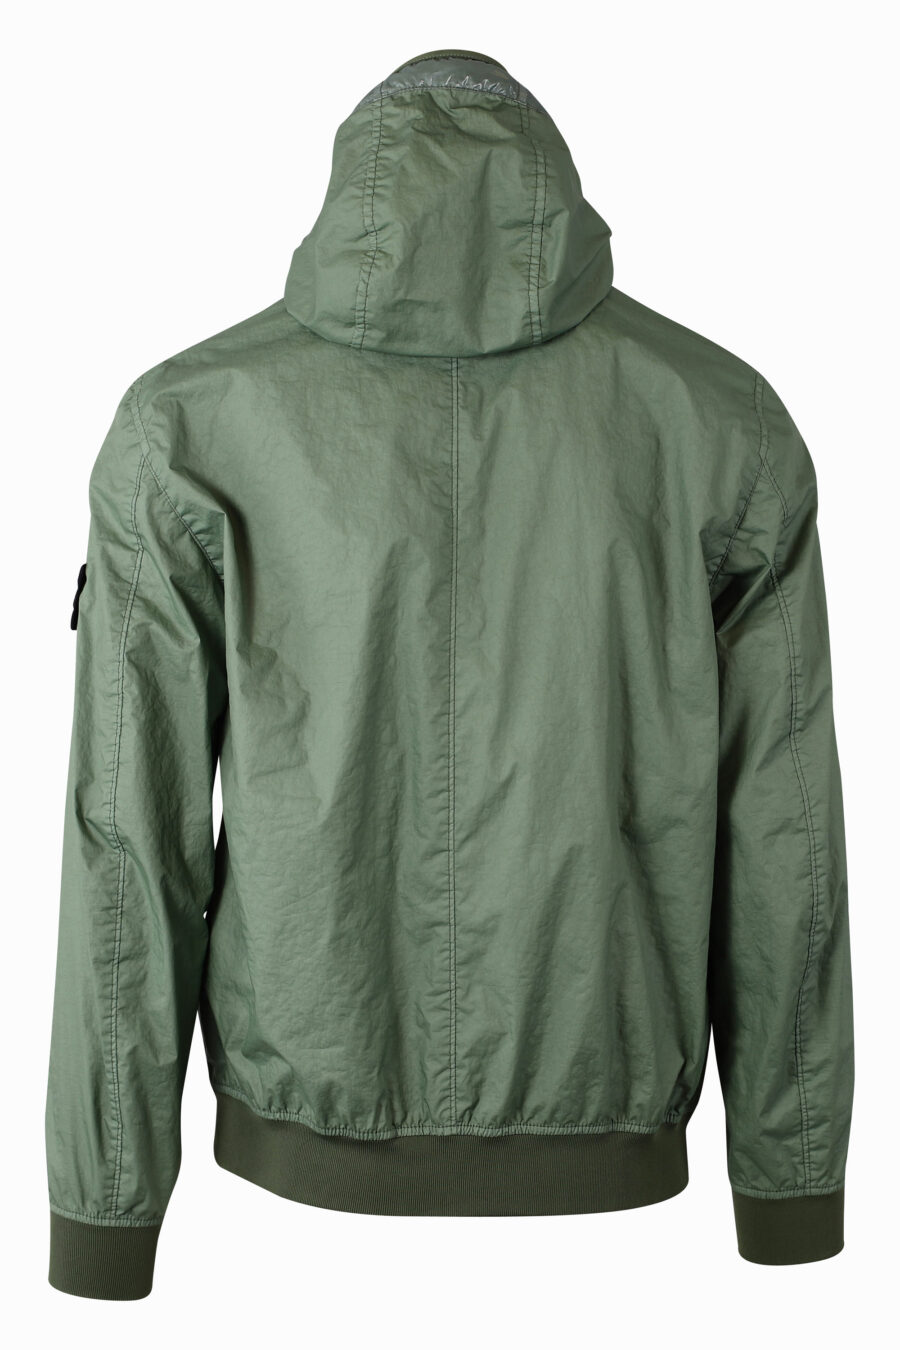 Veste verte avec capuche et logo - IMG 1075